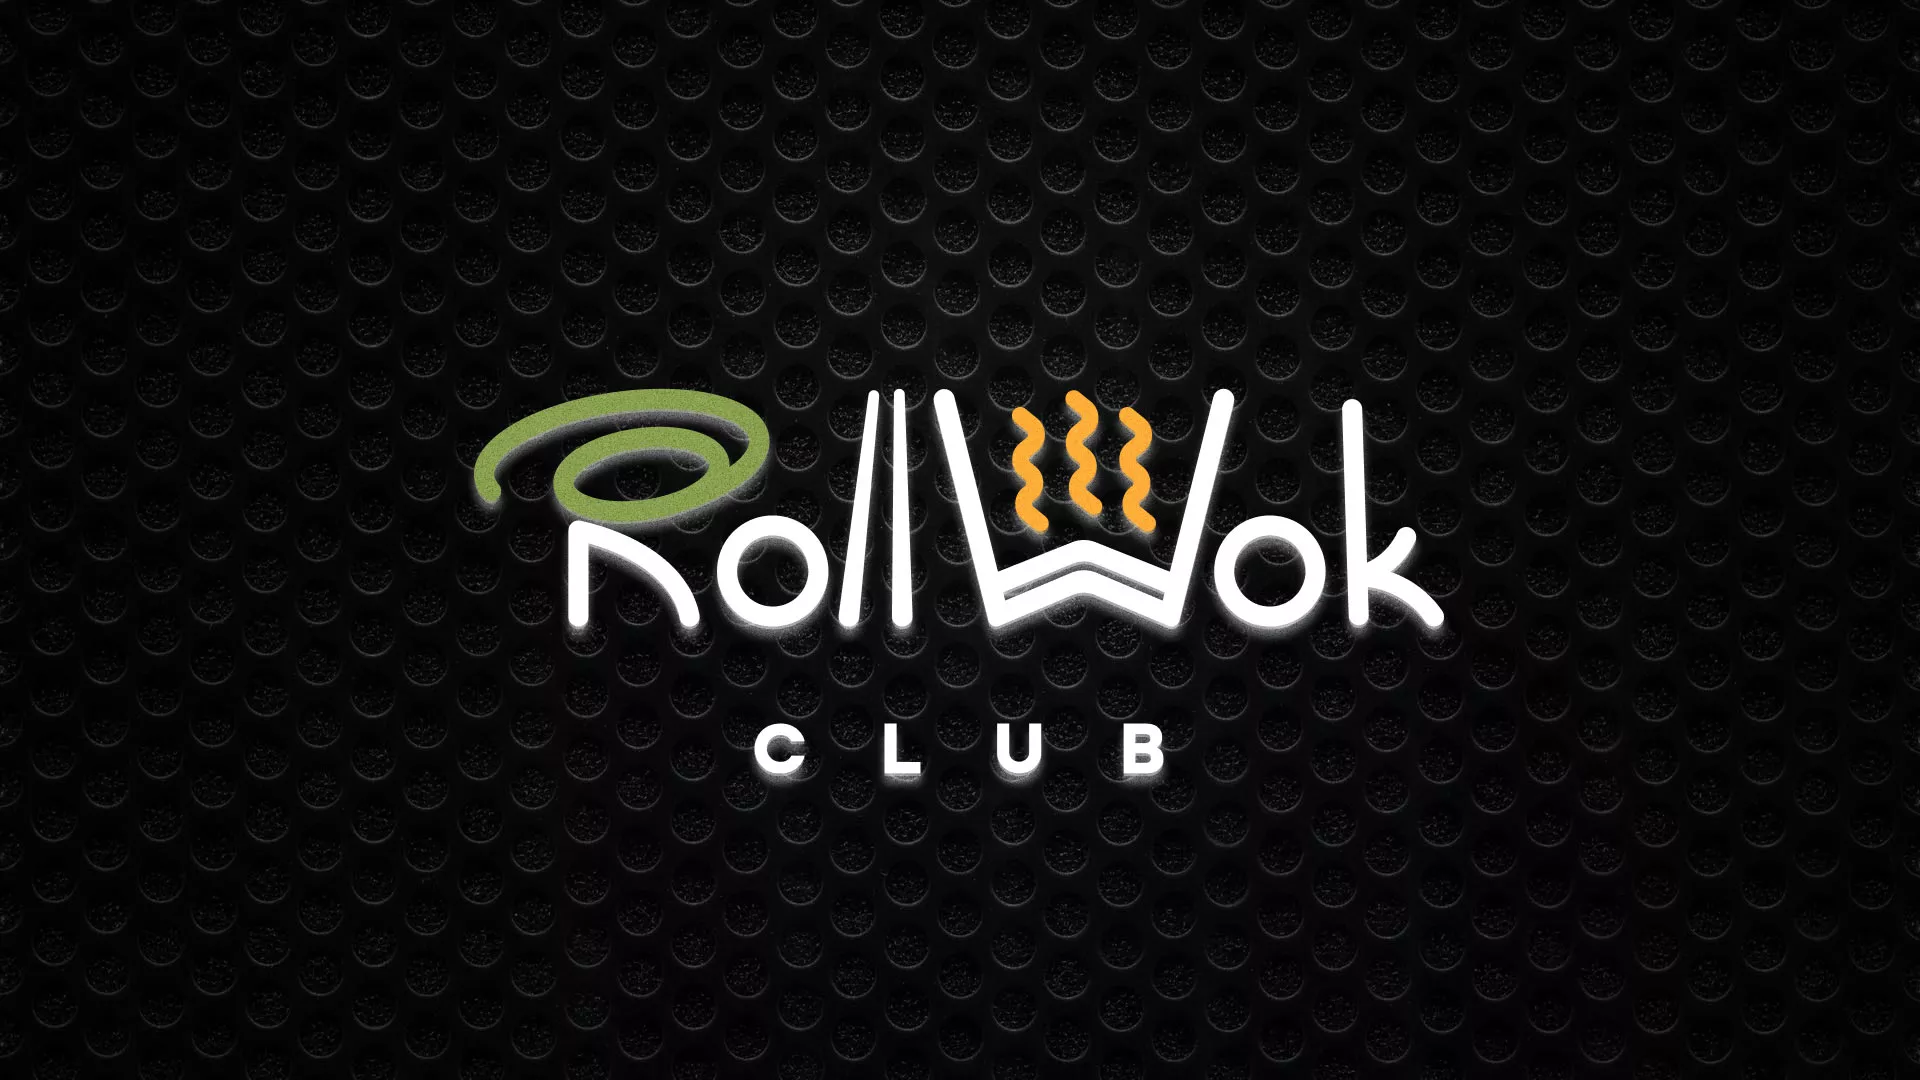 Брендирование торговых точек суши-бара «Roll Wok Club» в Белореченске